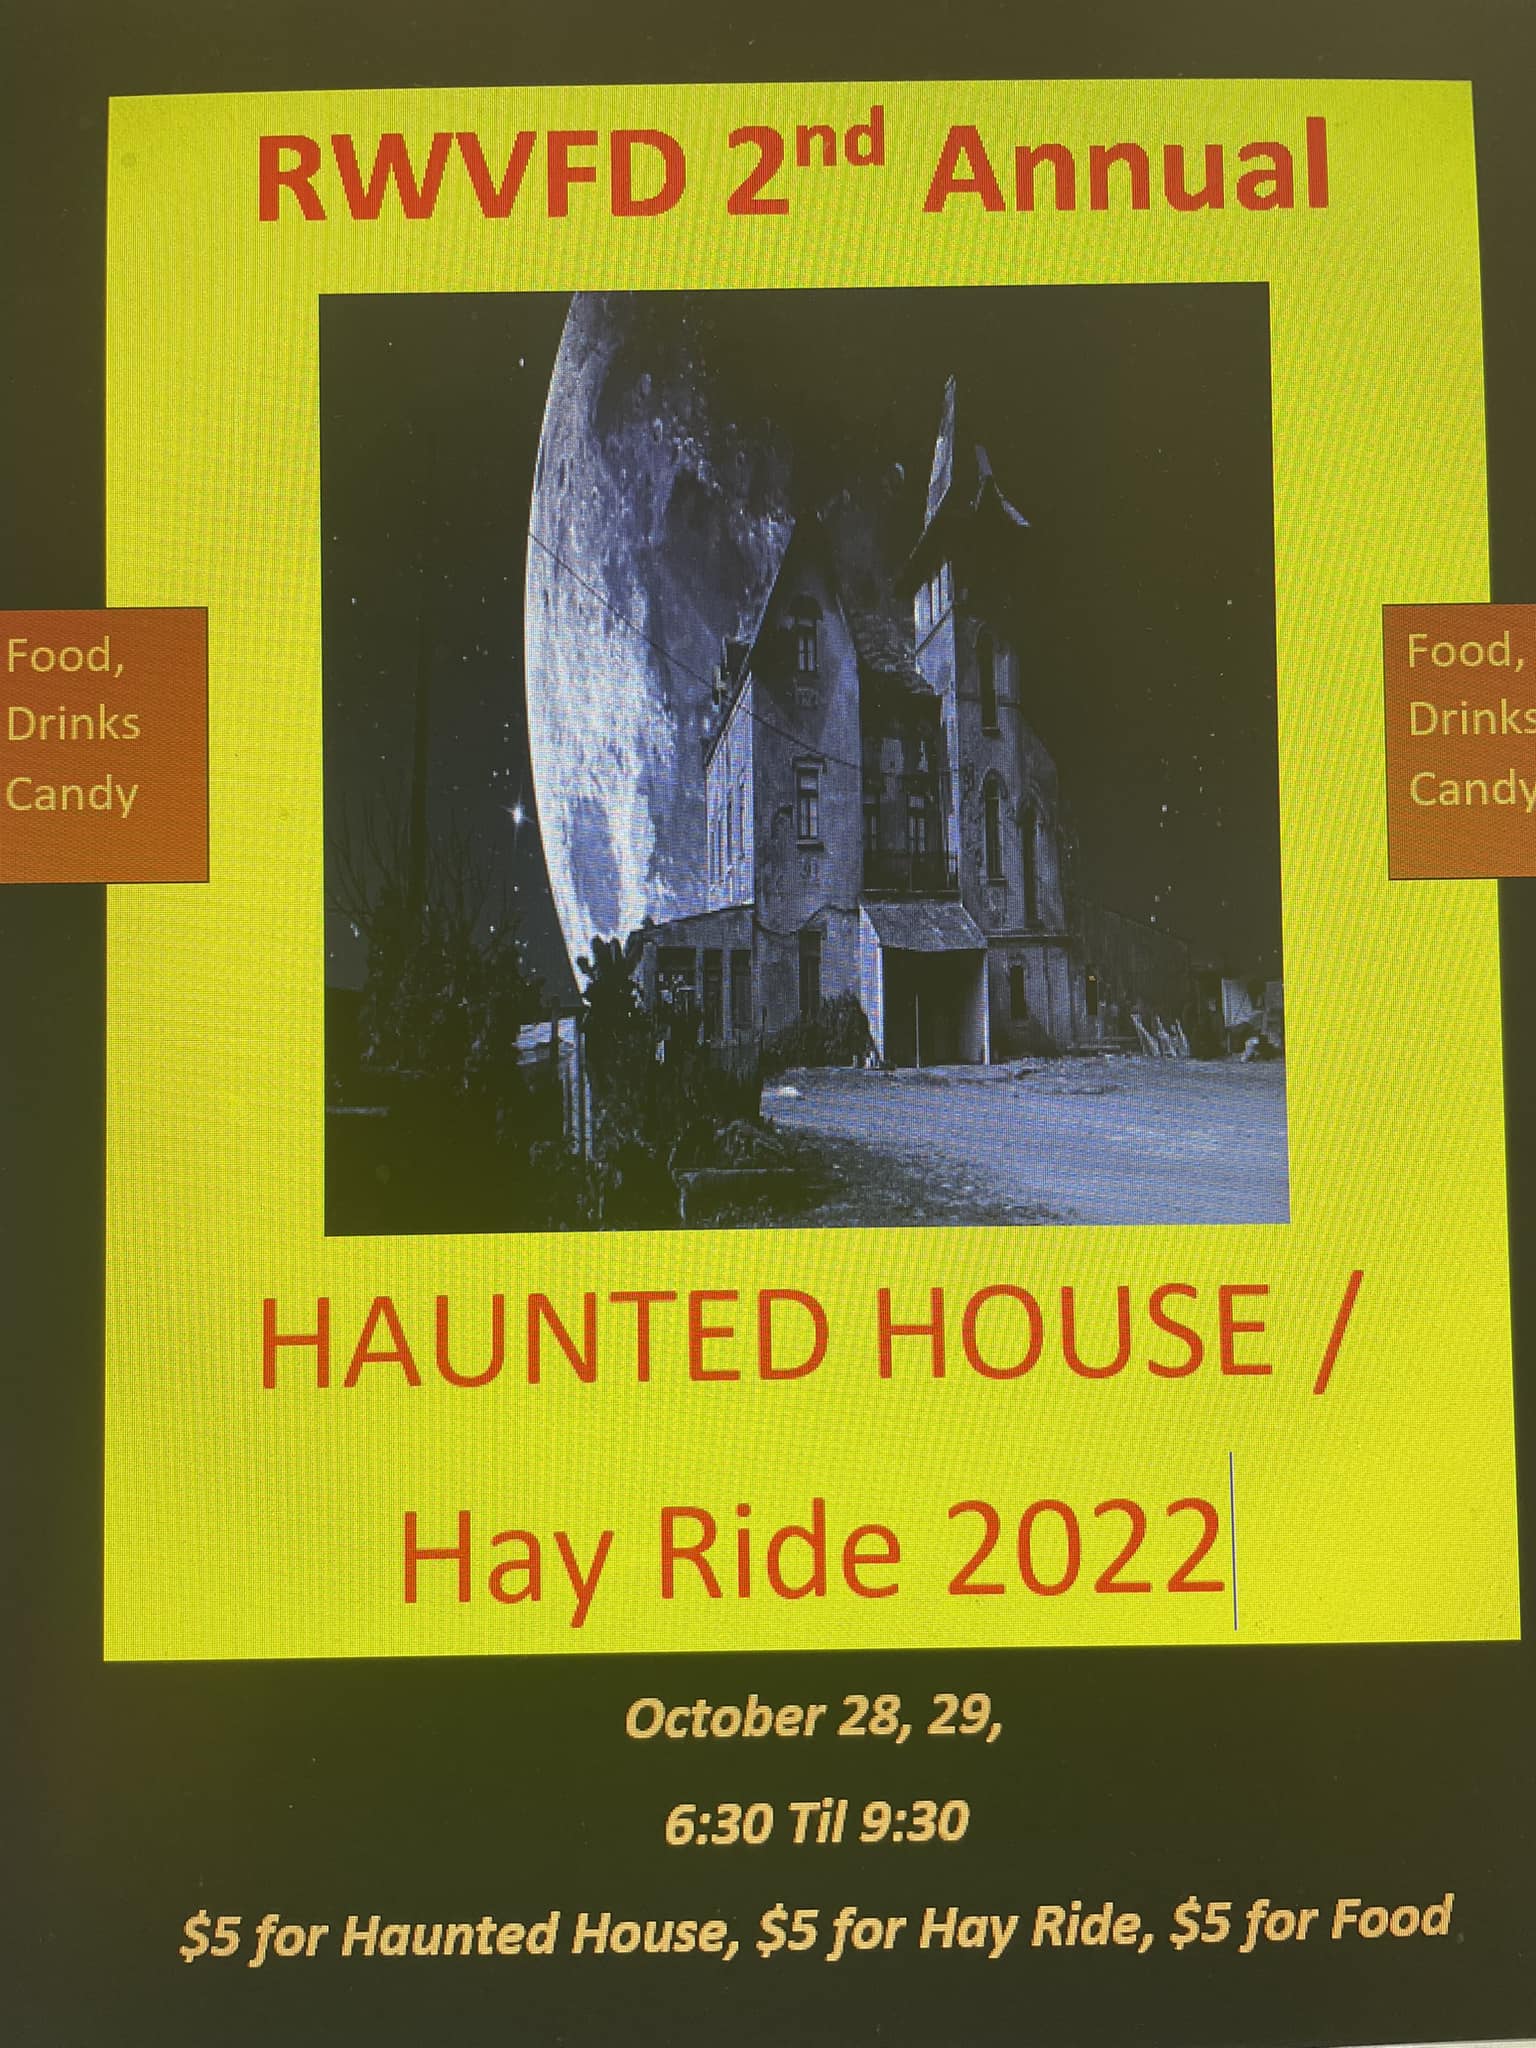 roanoke wildwood volunteer fire department haunted house hay ride halloween 2022